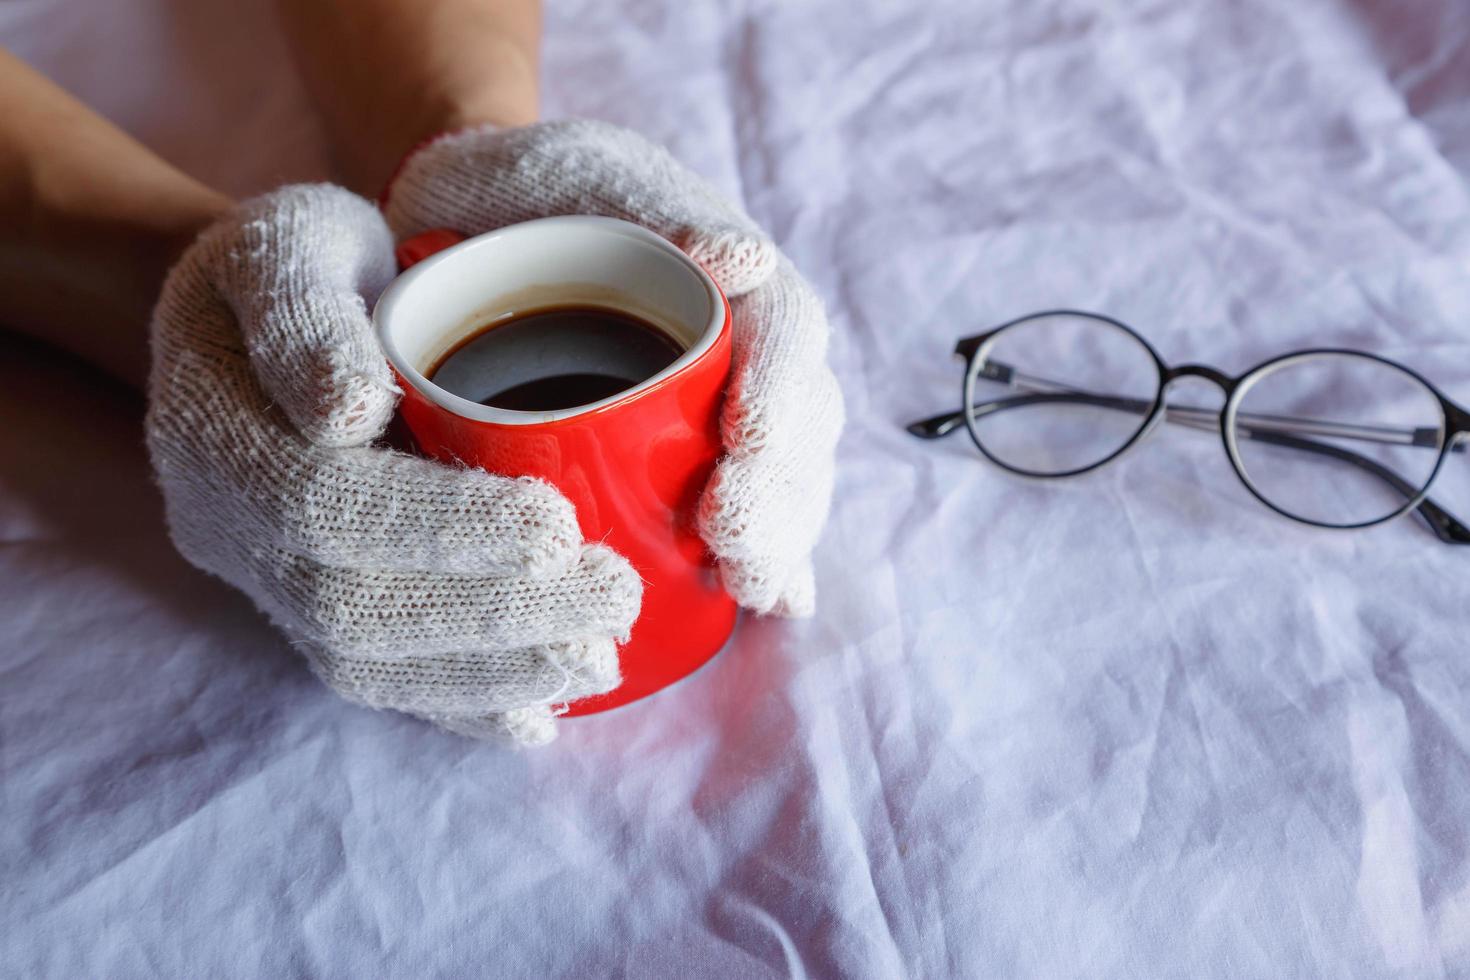 tazza di caffè rossa in mano indossando guanti in inverno foto